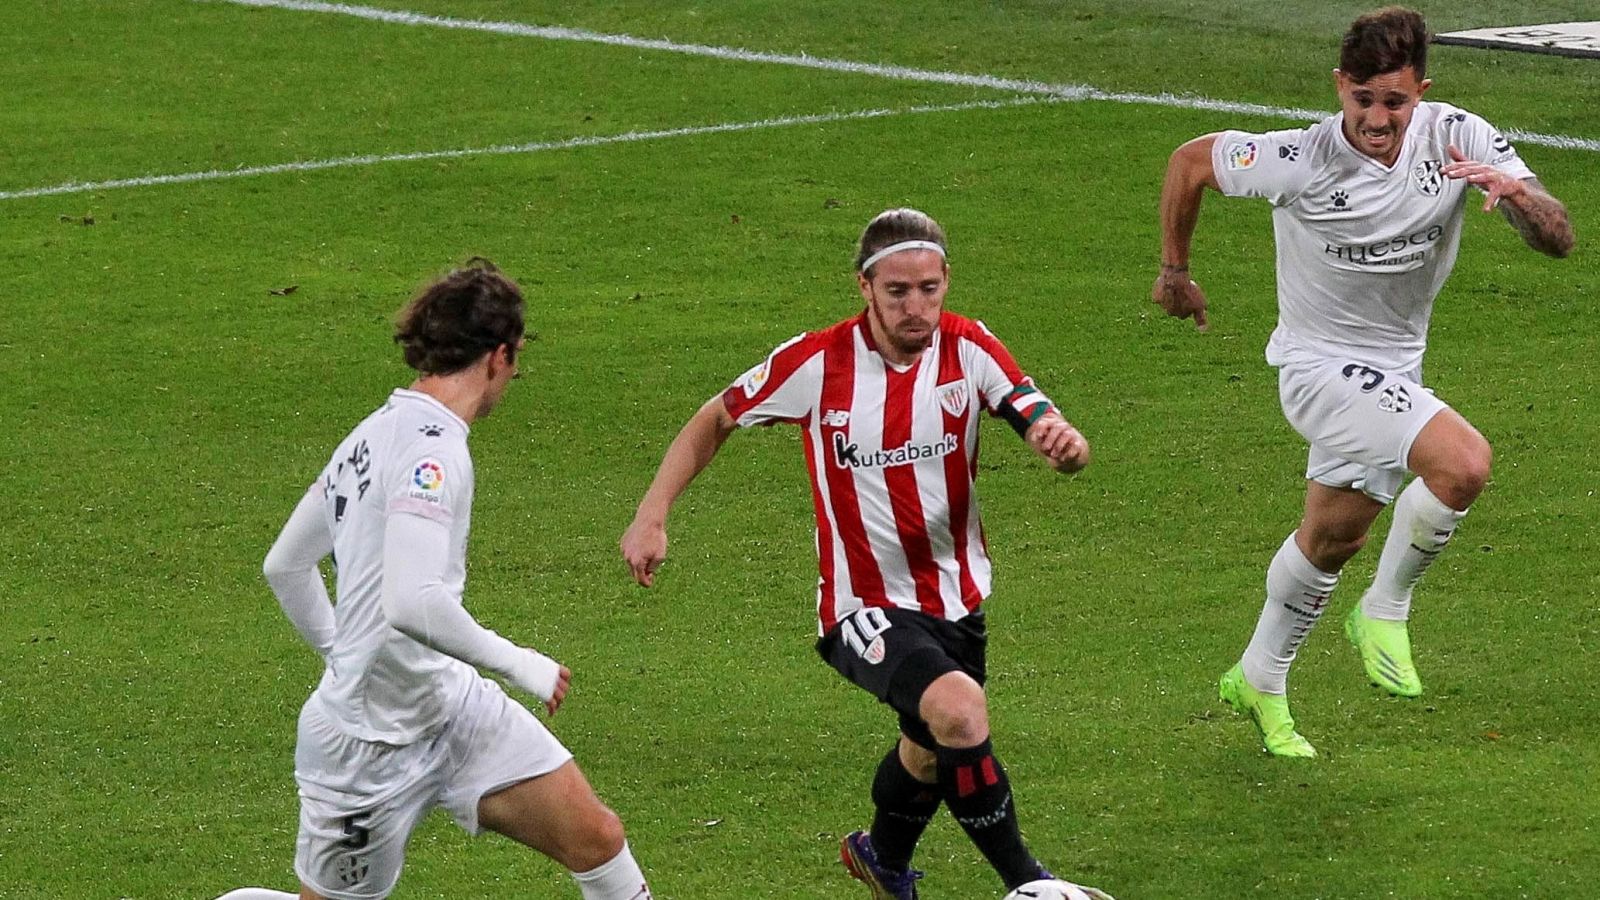 El centrocampista del Athletic Iker Muniain (c) juega un balón entre Pablo Maffeo (d) y Pedro Mosquera, ambos del Huesca.